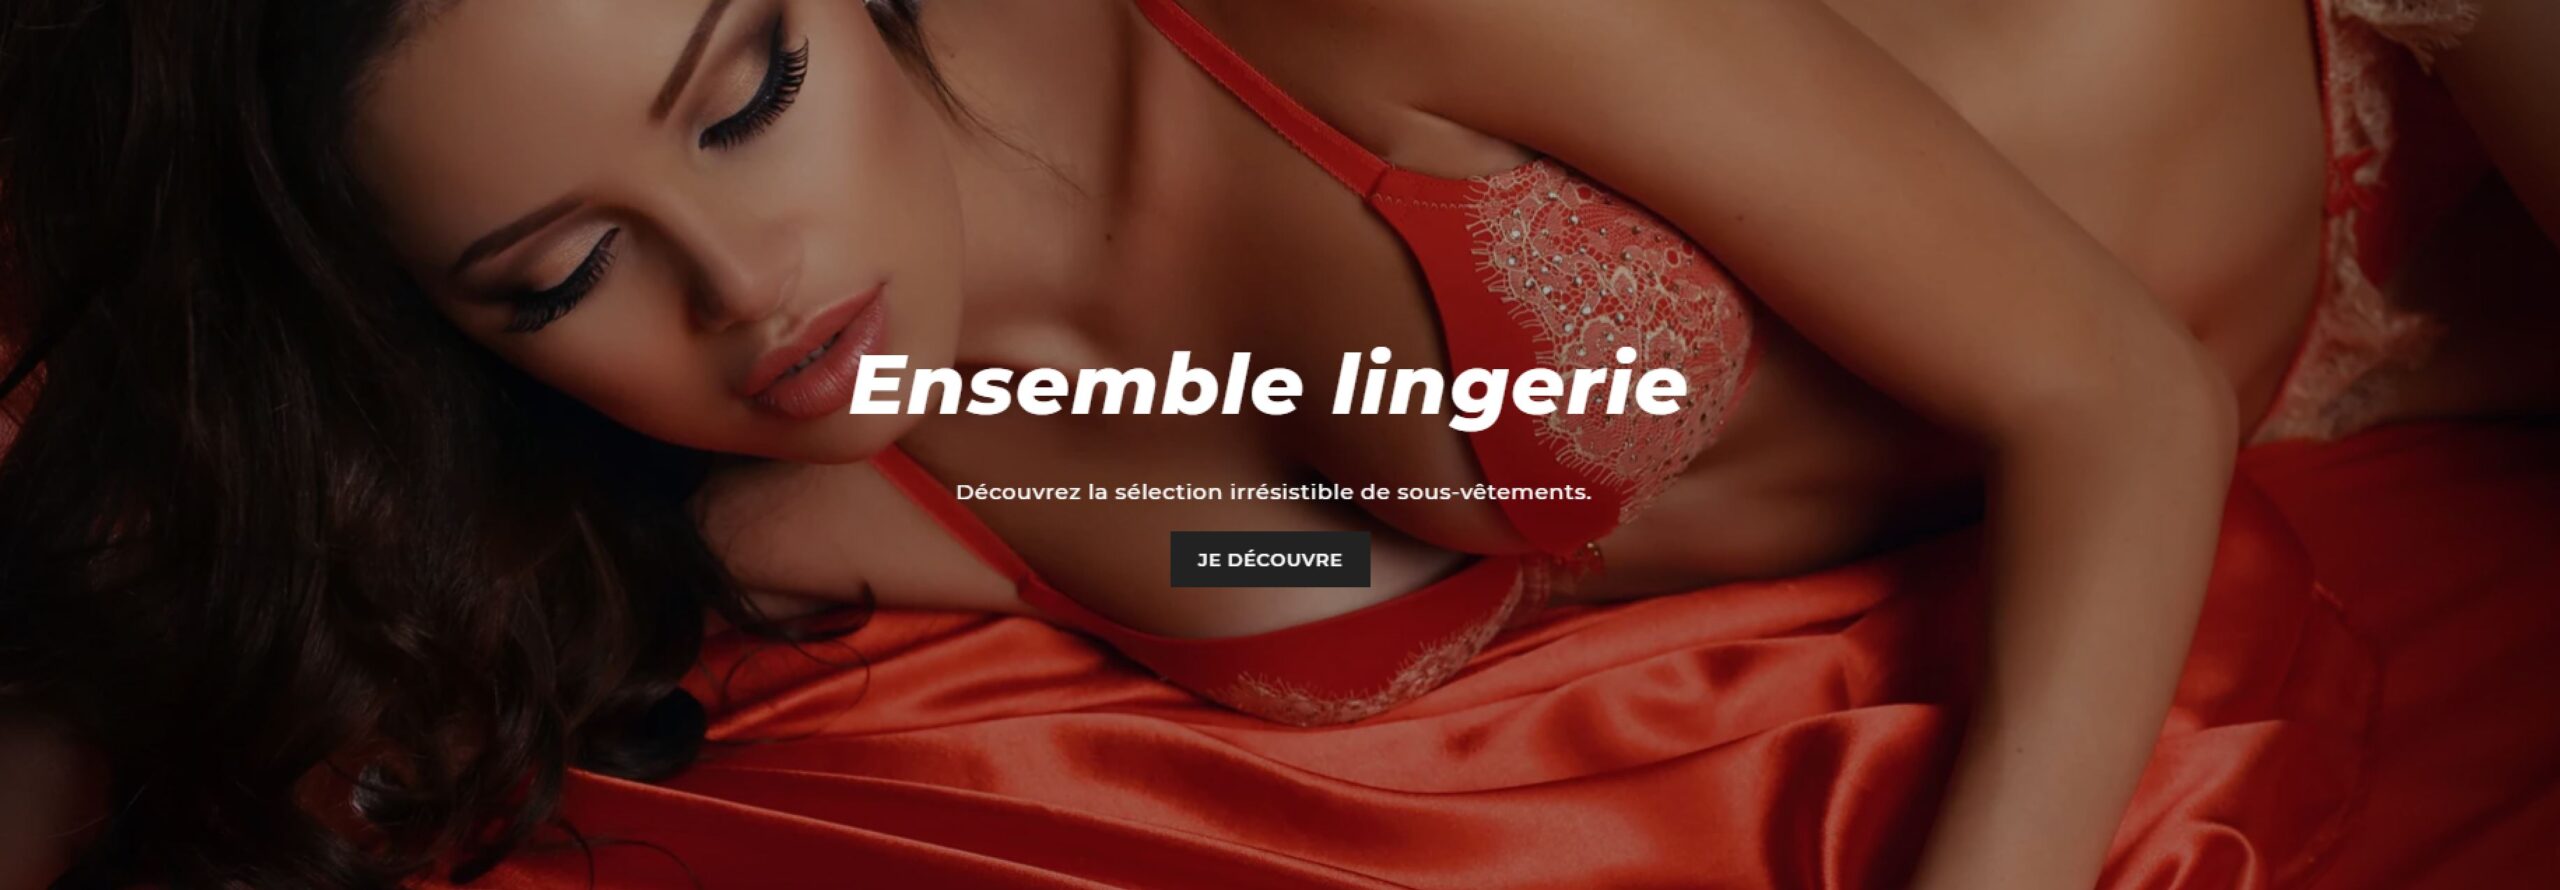 Découvrez un monde de sensualité et de séduction avec Lingeriehot.fr !